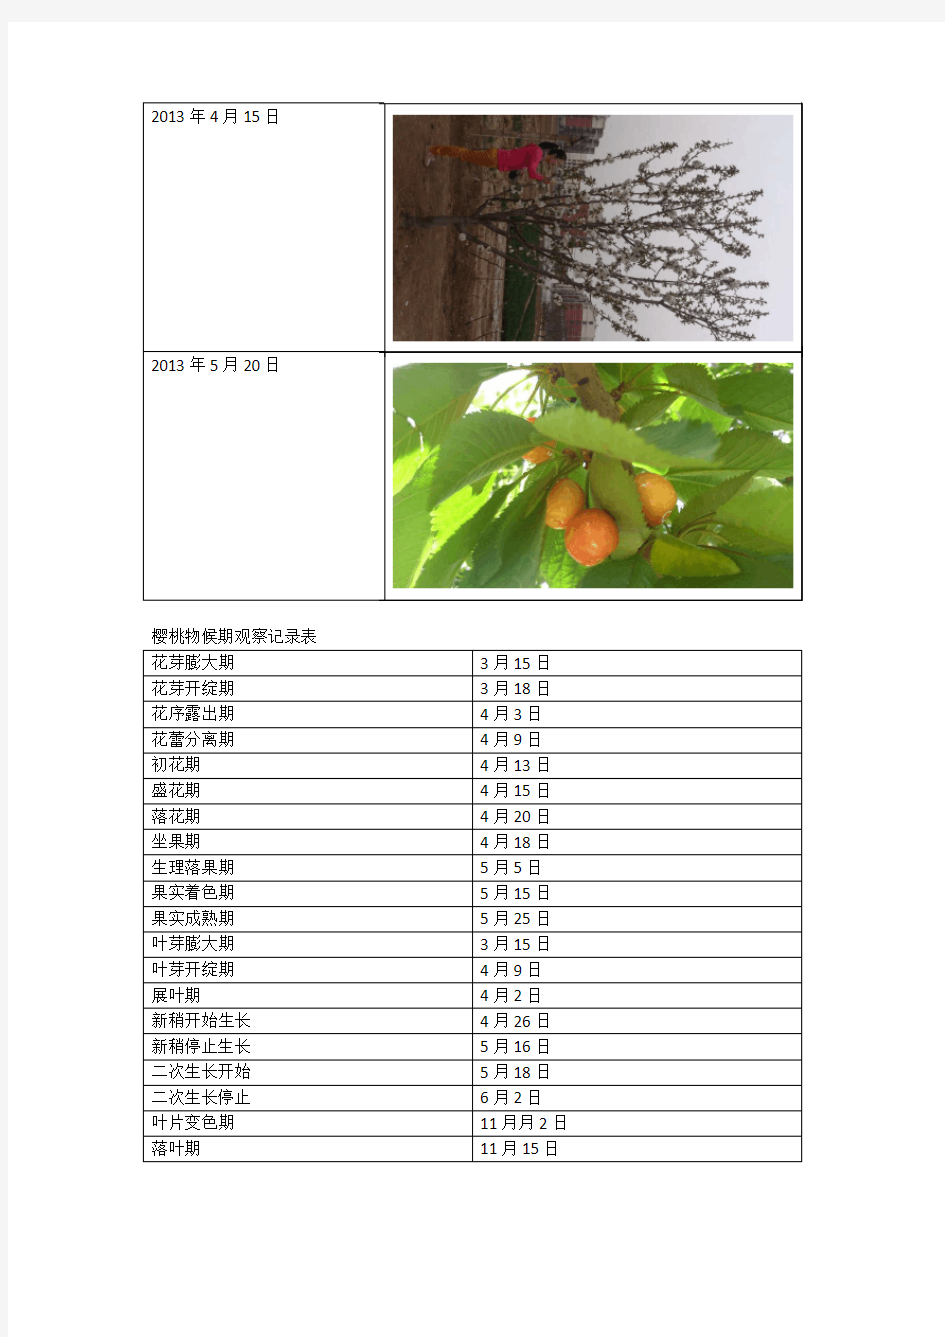 果树物候期报告-田间实验报告